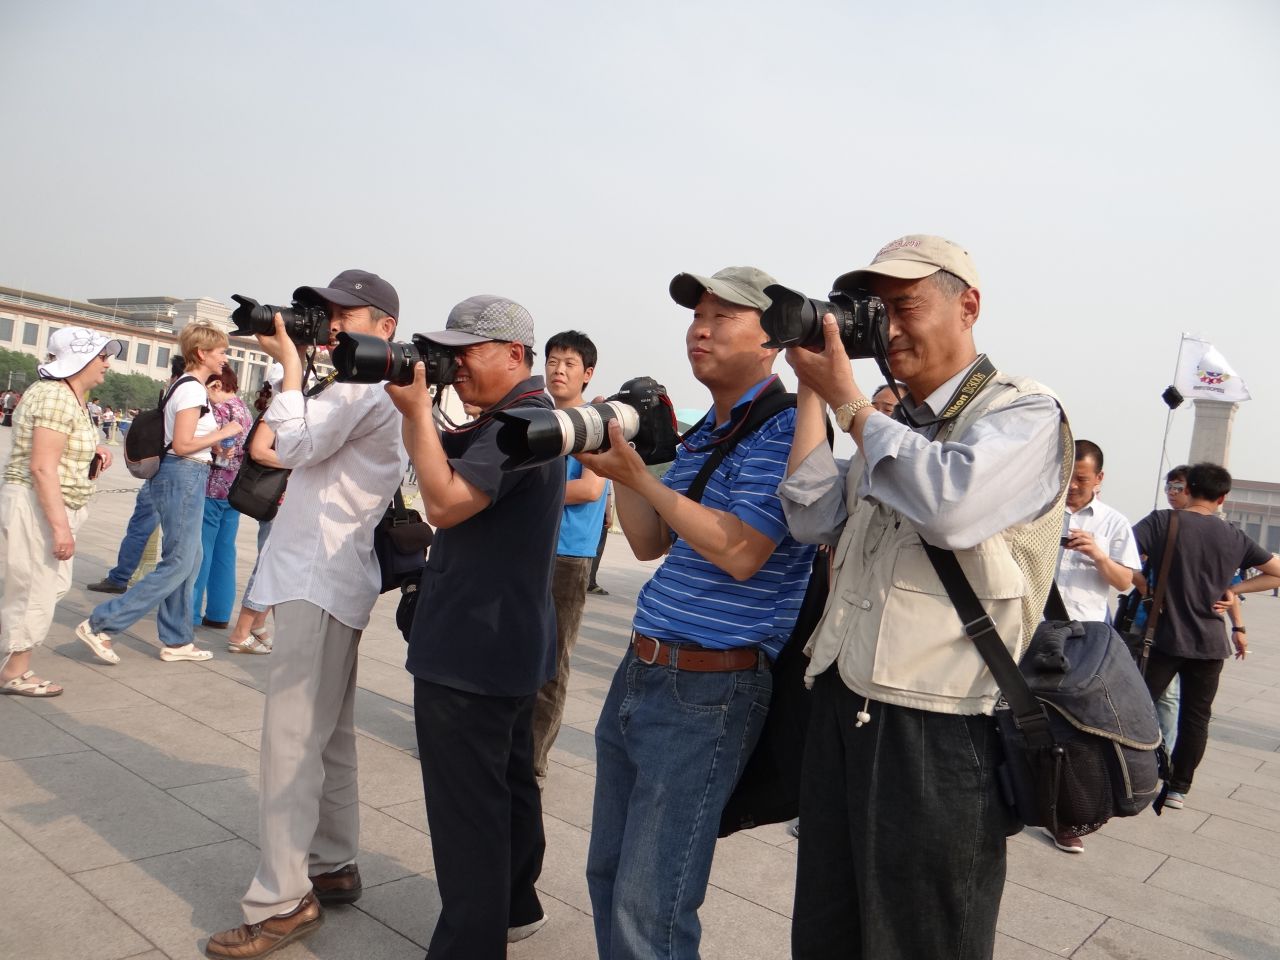 Гуляющие дружным составом люди вызывают неподдельное внимание китайцев, мы фоткаем их - они нас - Китай. Май-июнь 2013. Часть 1, Пекин.